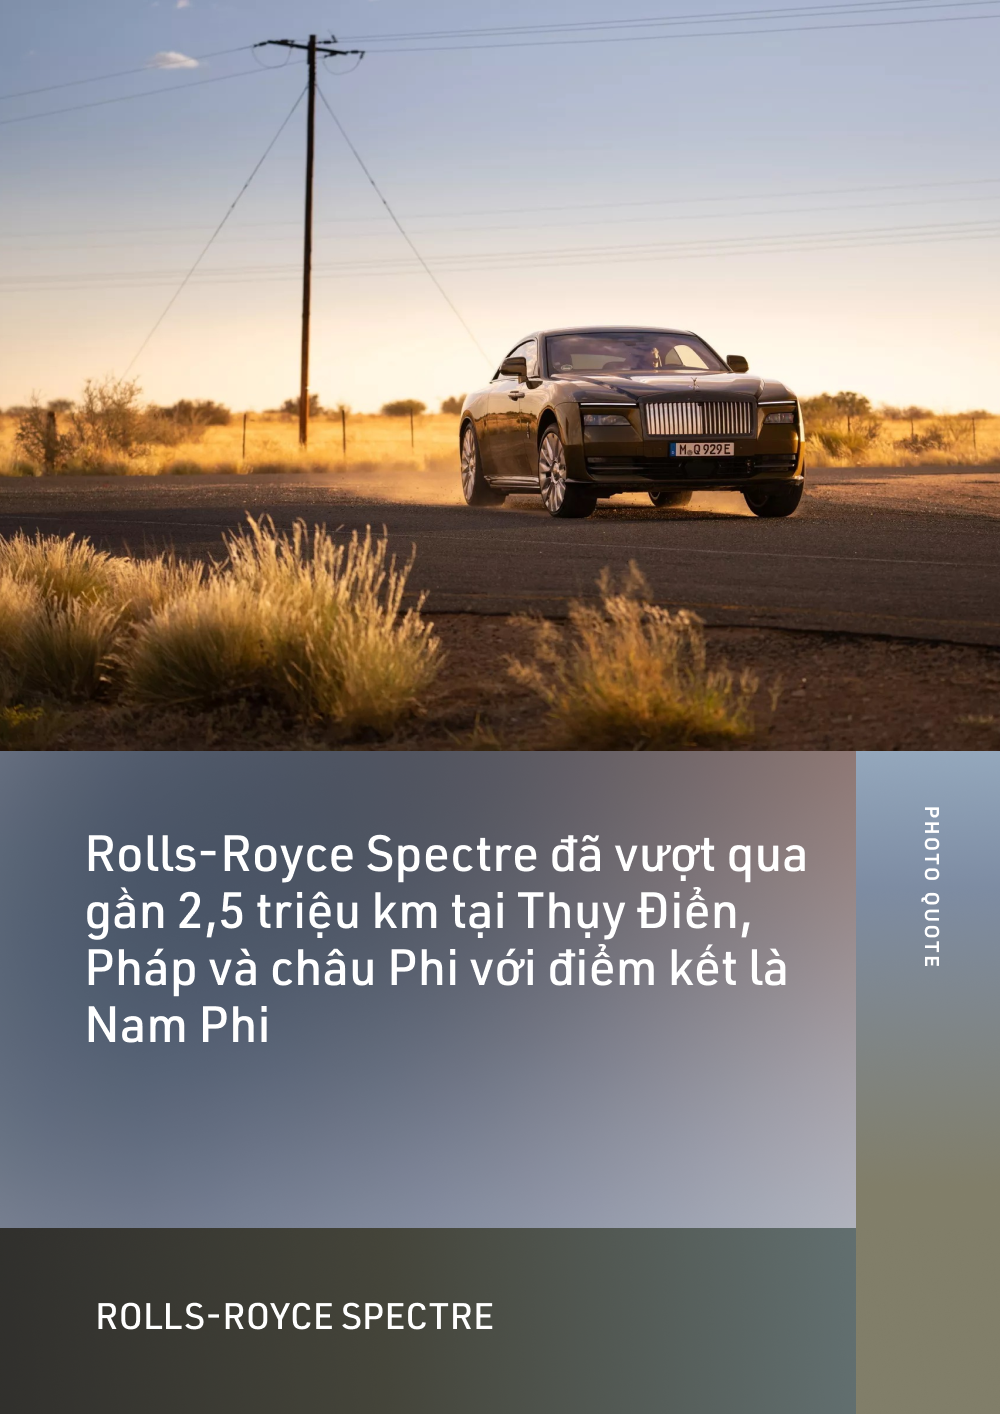 Tôi là phóng viên đầu tiên lái thử Rolls-Royce Spectre và thấy đây như một ốc đảo 4 bánh - Ảnh 3.